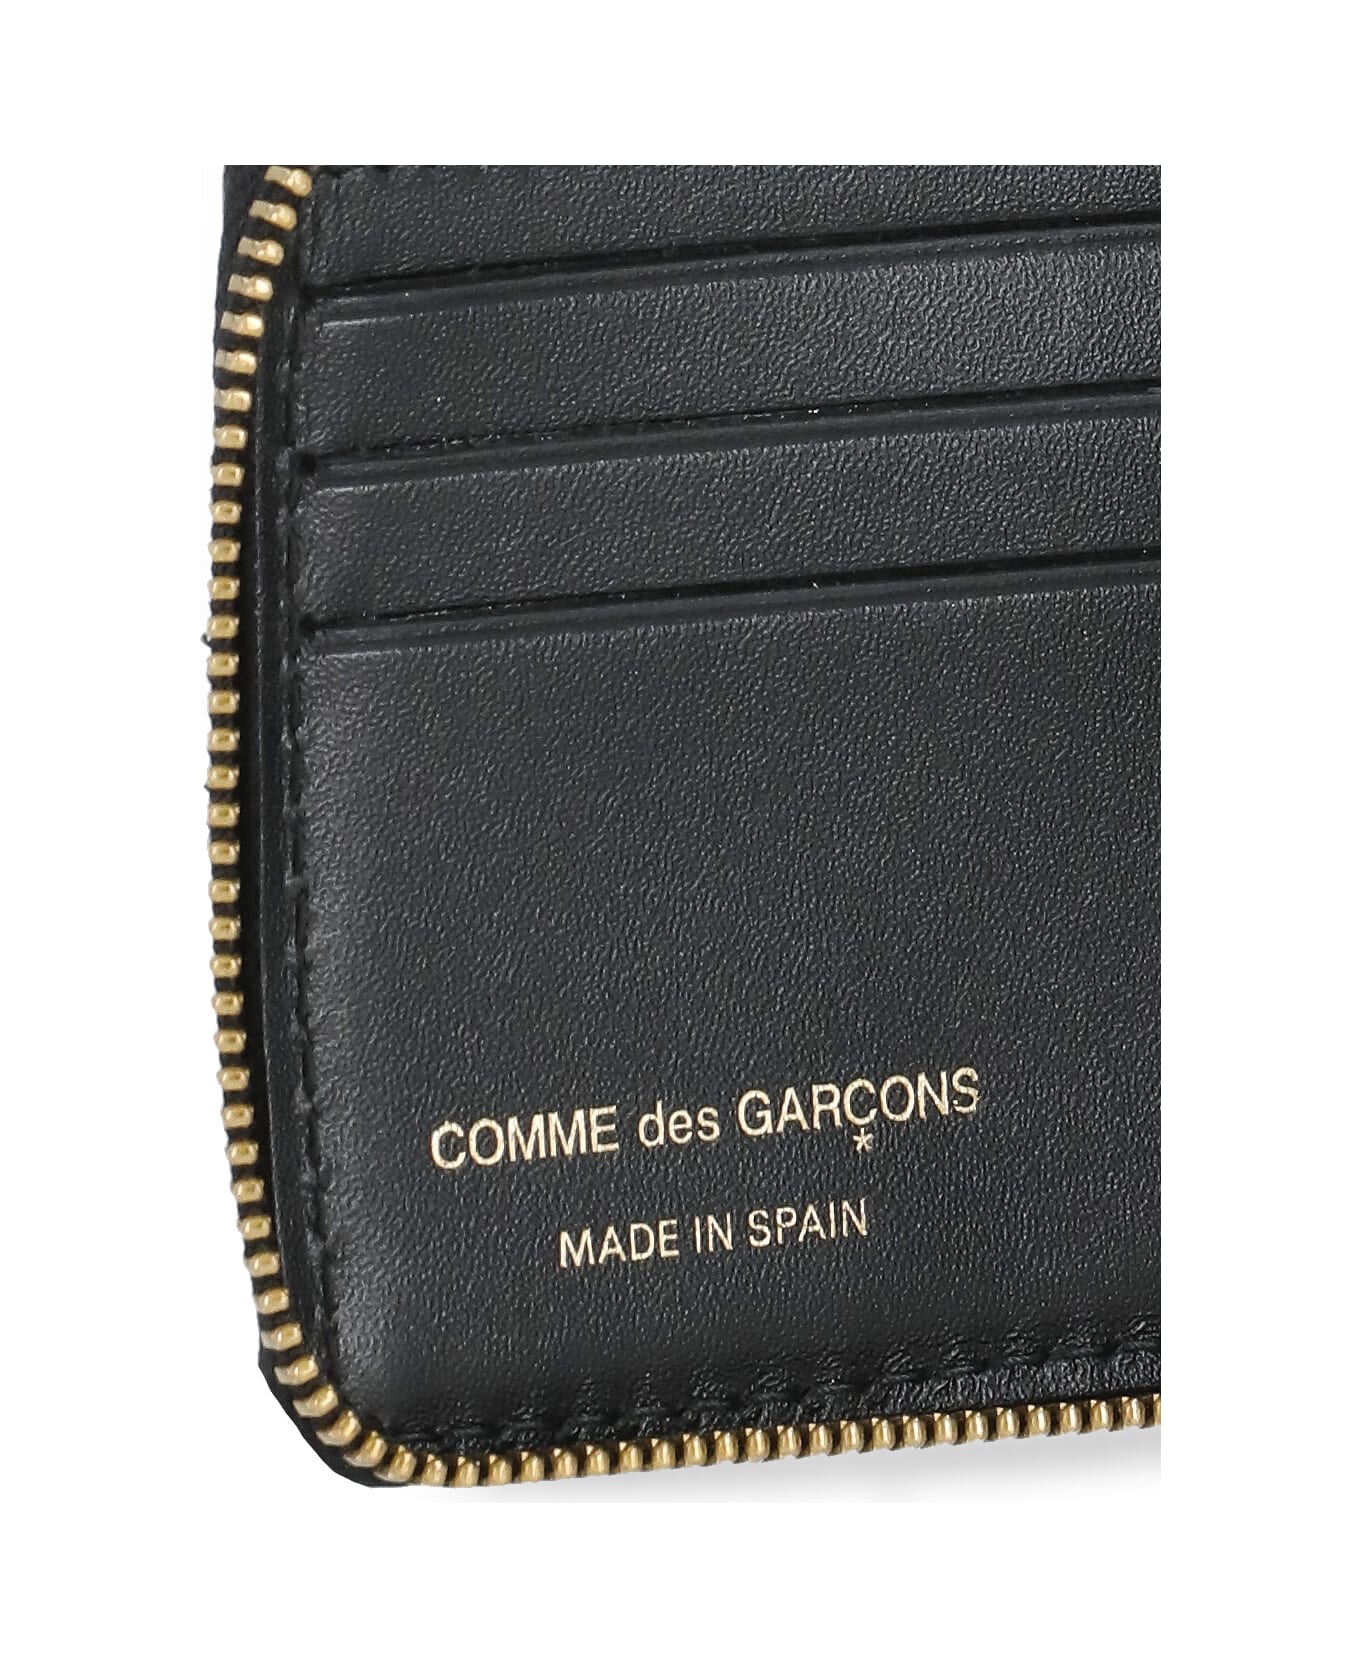 Comme des Garçons Wallet Wallet With A Tartan Pattern - Green